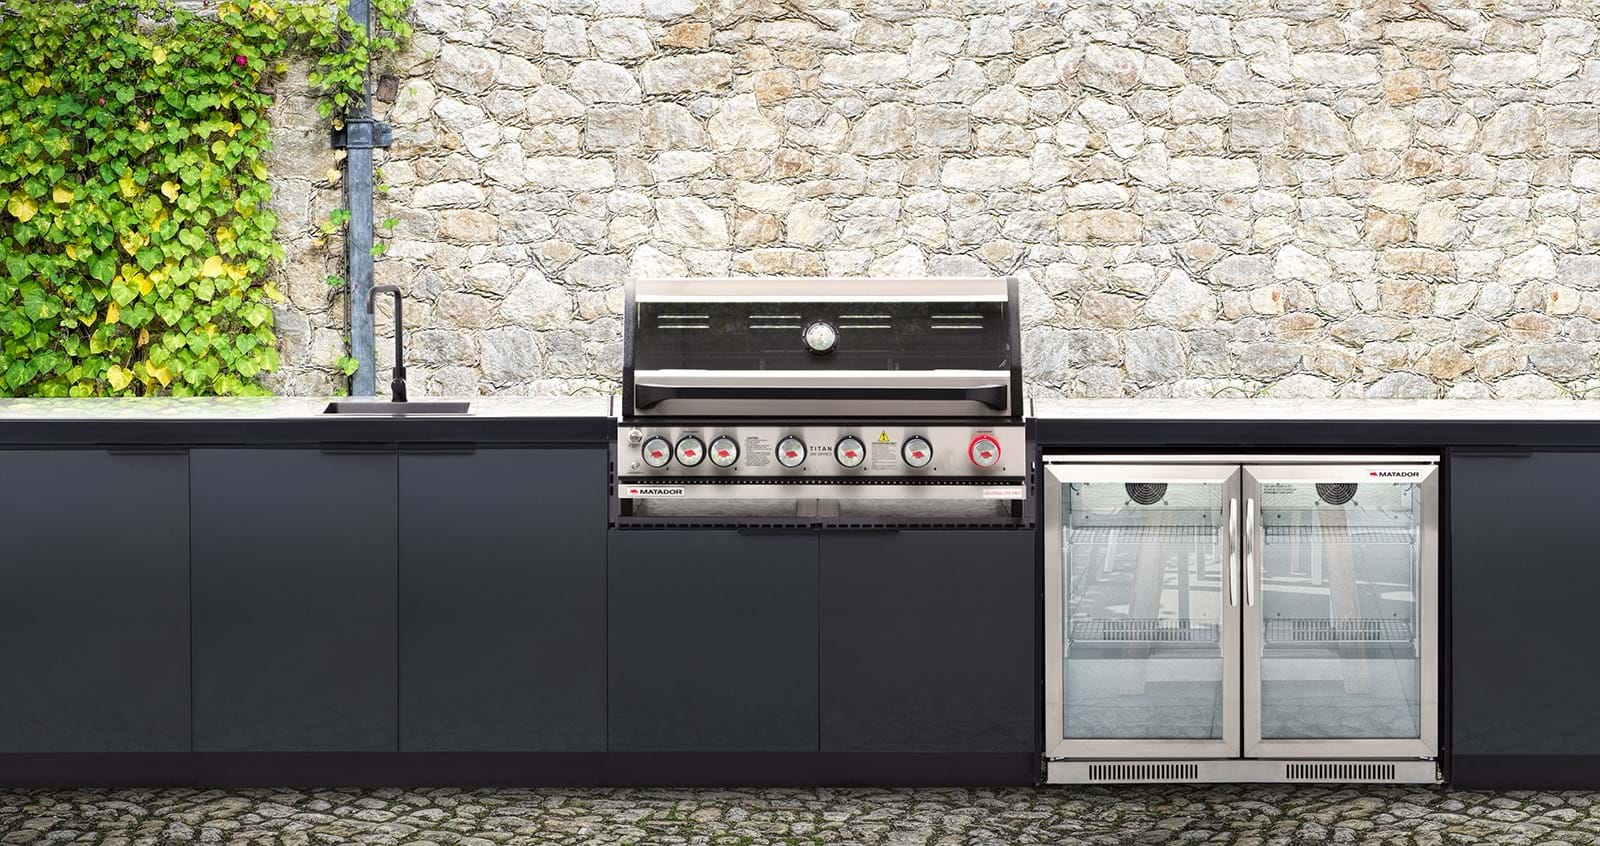 Alfresco Modular Outdoor Kitchen Diy Ideas Inspiration Alfrescoplus